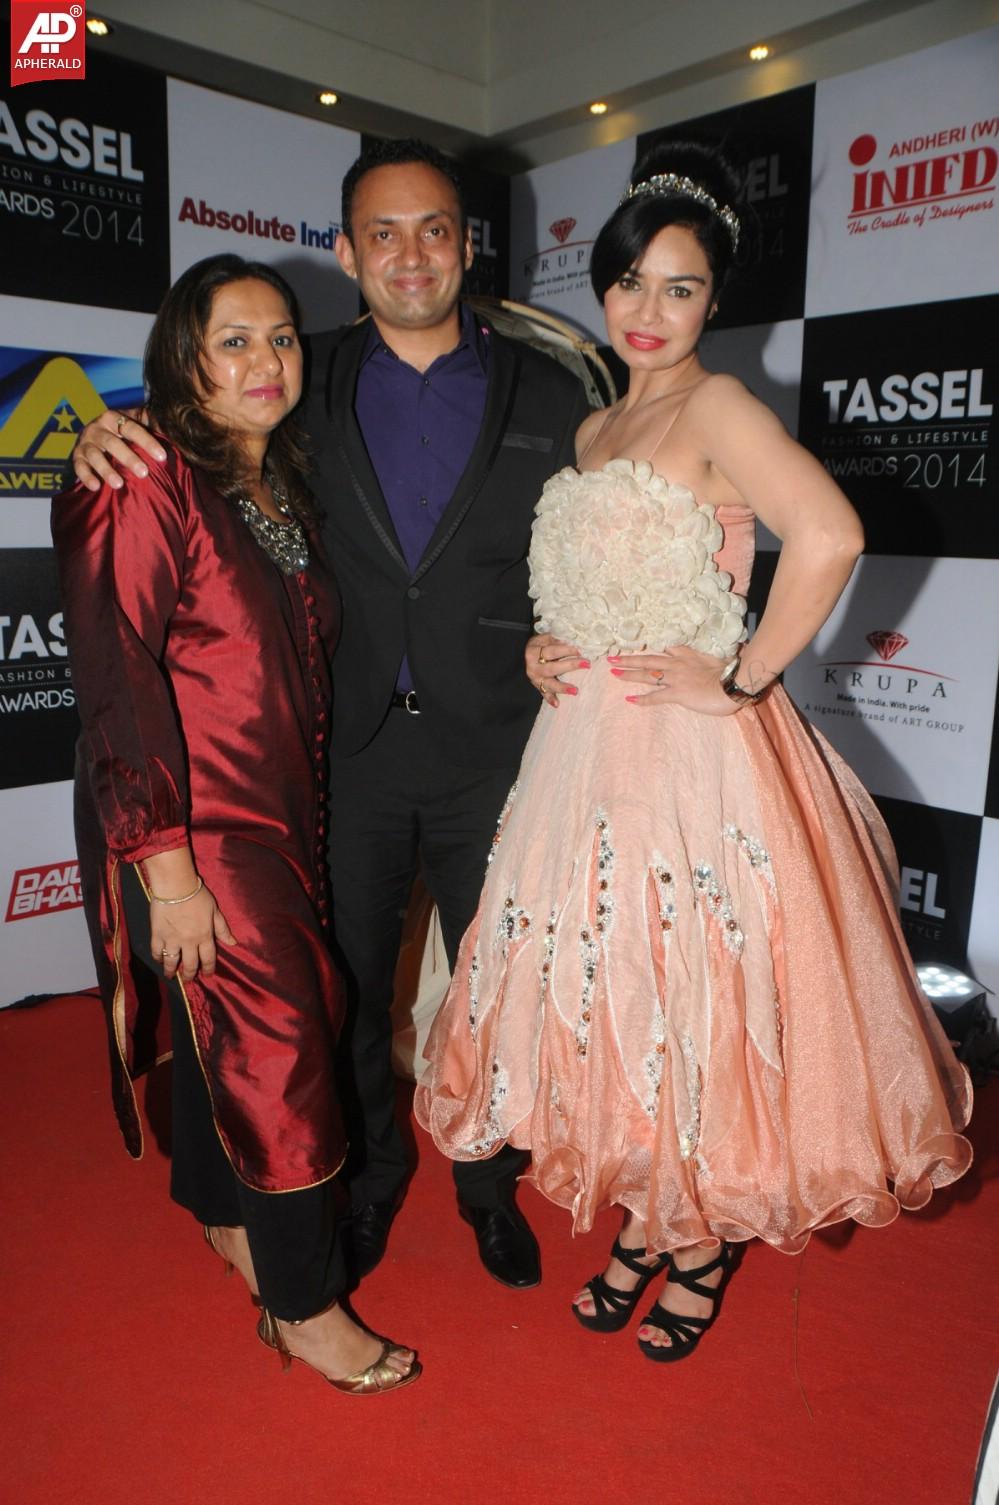 Tassel Fashion n Lifestyle Awards 2014